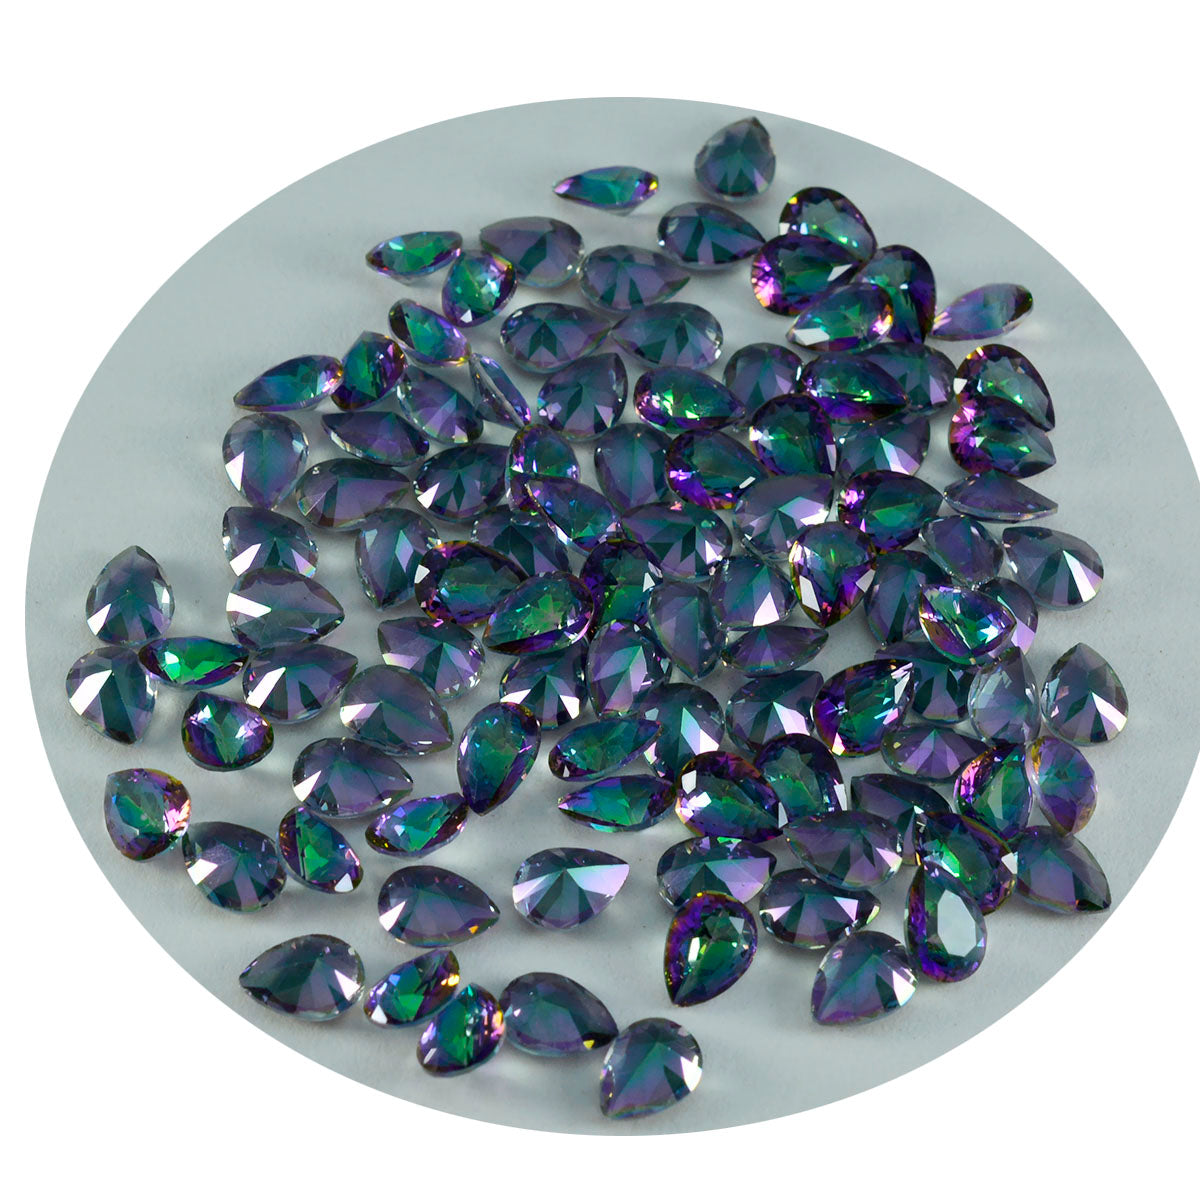 riyogems 1 шт., разноцветный мистический кварц, граненый 3x5 мм, грушевидная форма, отличное качество, свободный камень